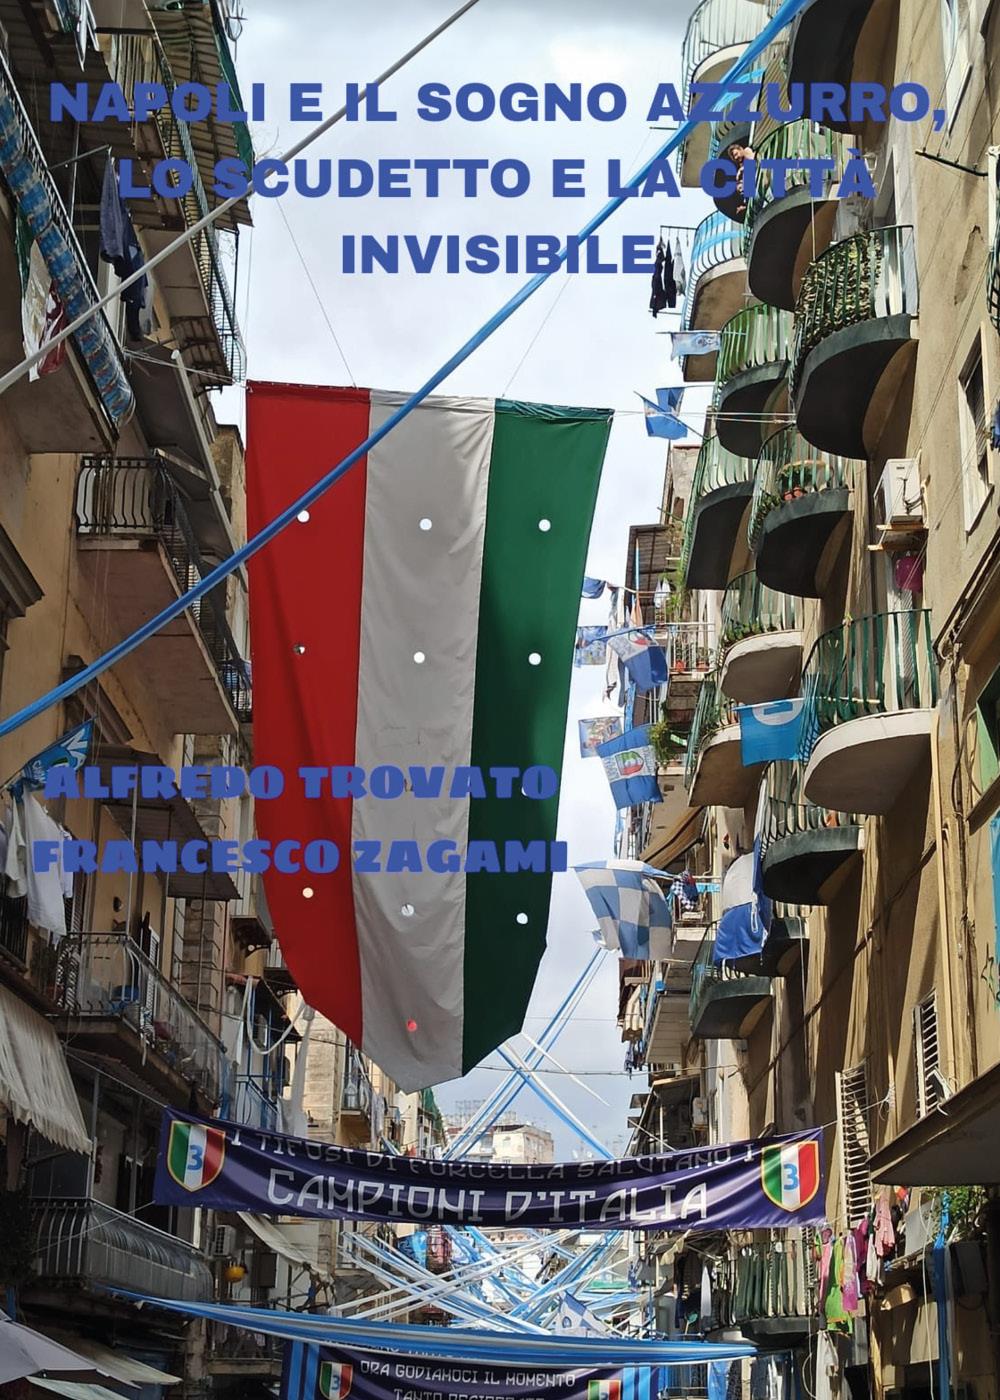 Napoli e il sogno azzurro - Lo scudetto e la città invisibile